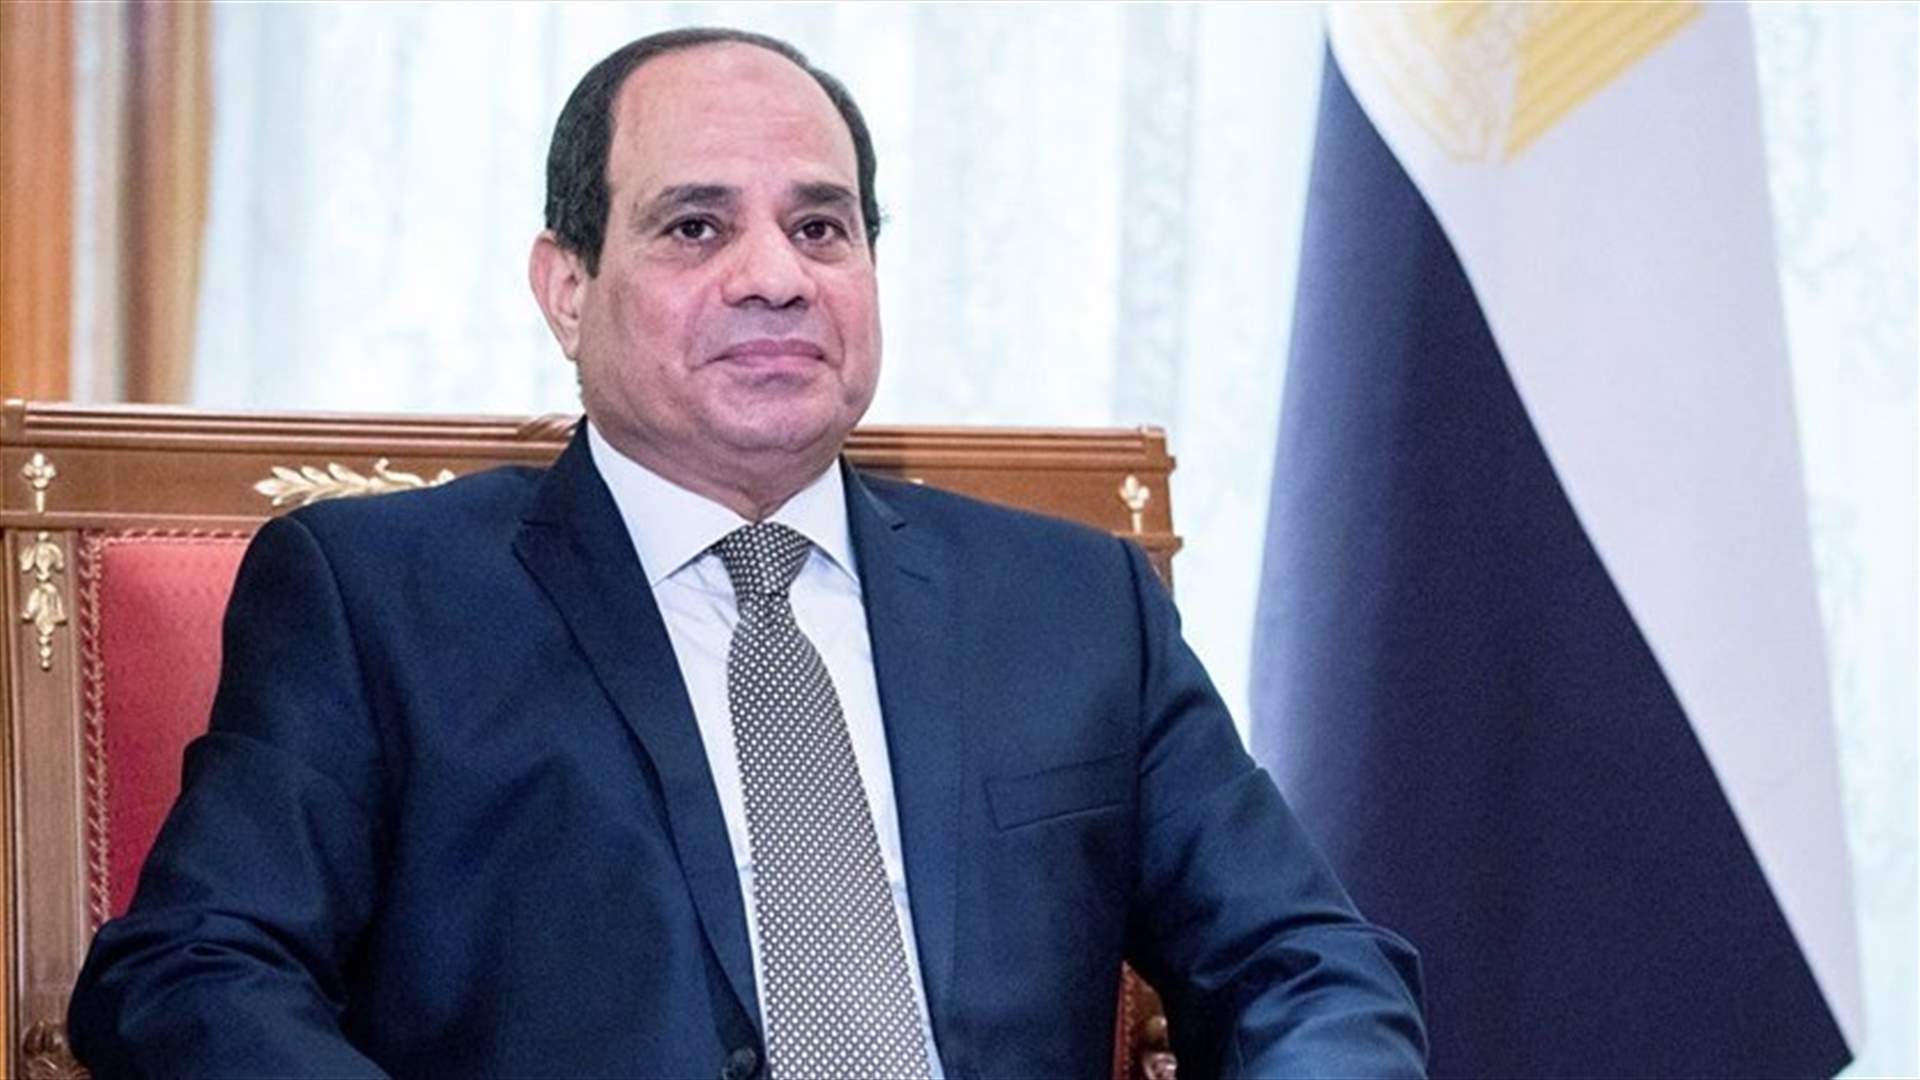 لأول مرة منذ توليه منصبه... الرئيس المصري يزور قطر الثلاثاء